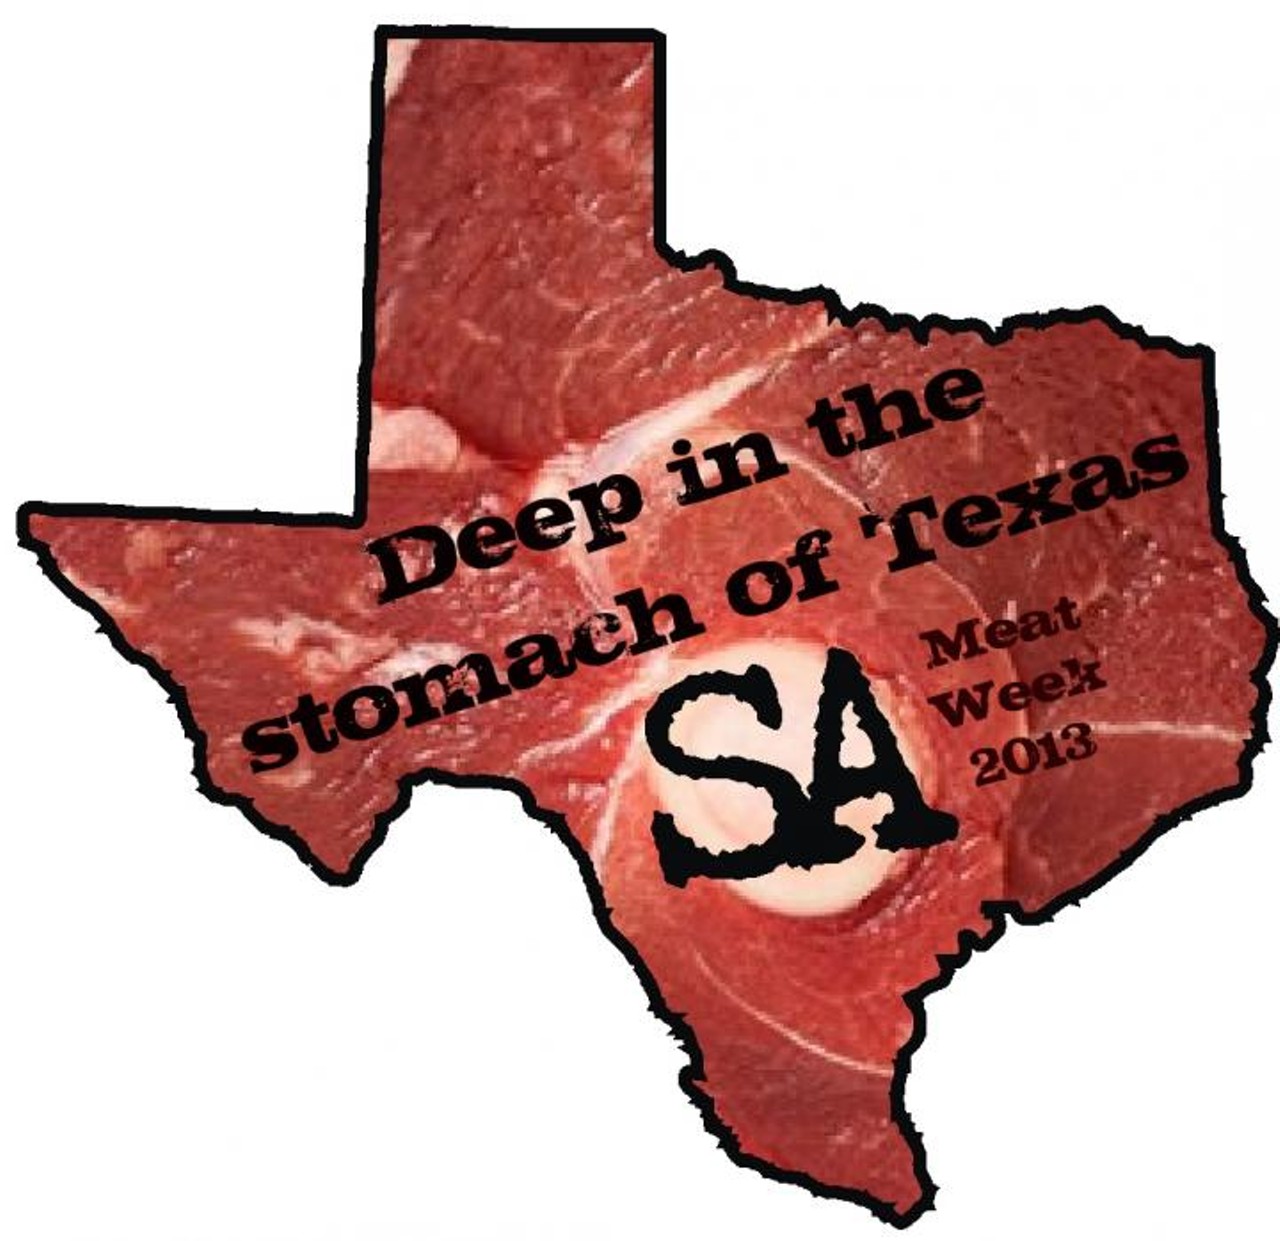 Meat Week San Antonio